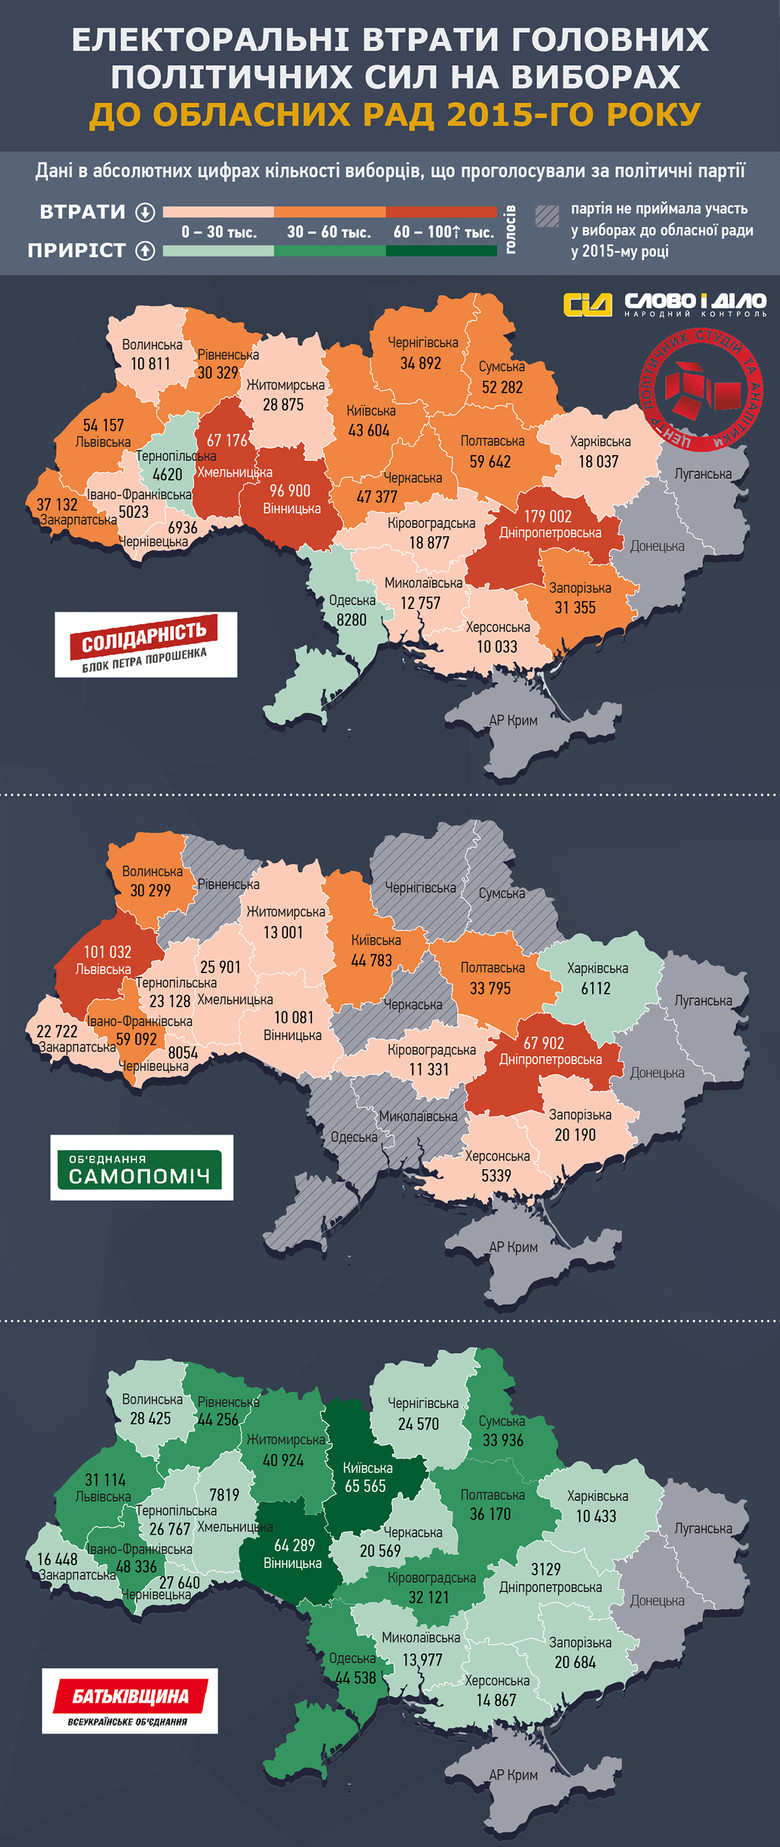 «Слово и Дело» совместно с Центром политических студий и аналитики провело анализ местных выборов в регионах Украины по количеству потерь избирателей политическими партиями в облсоветах.